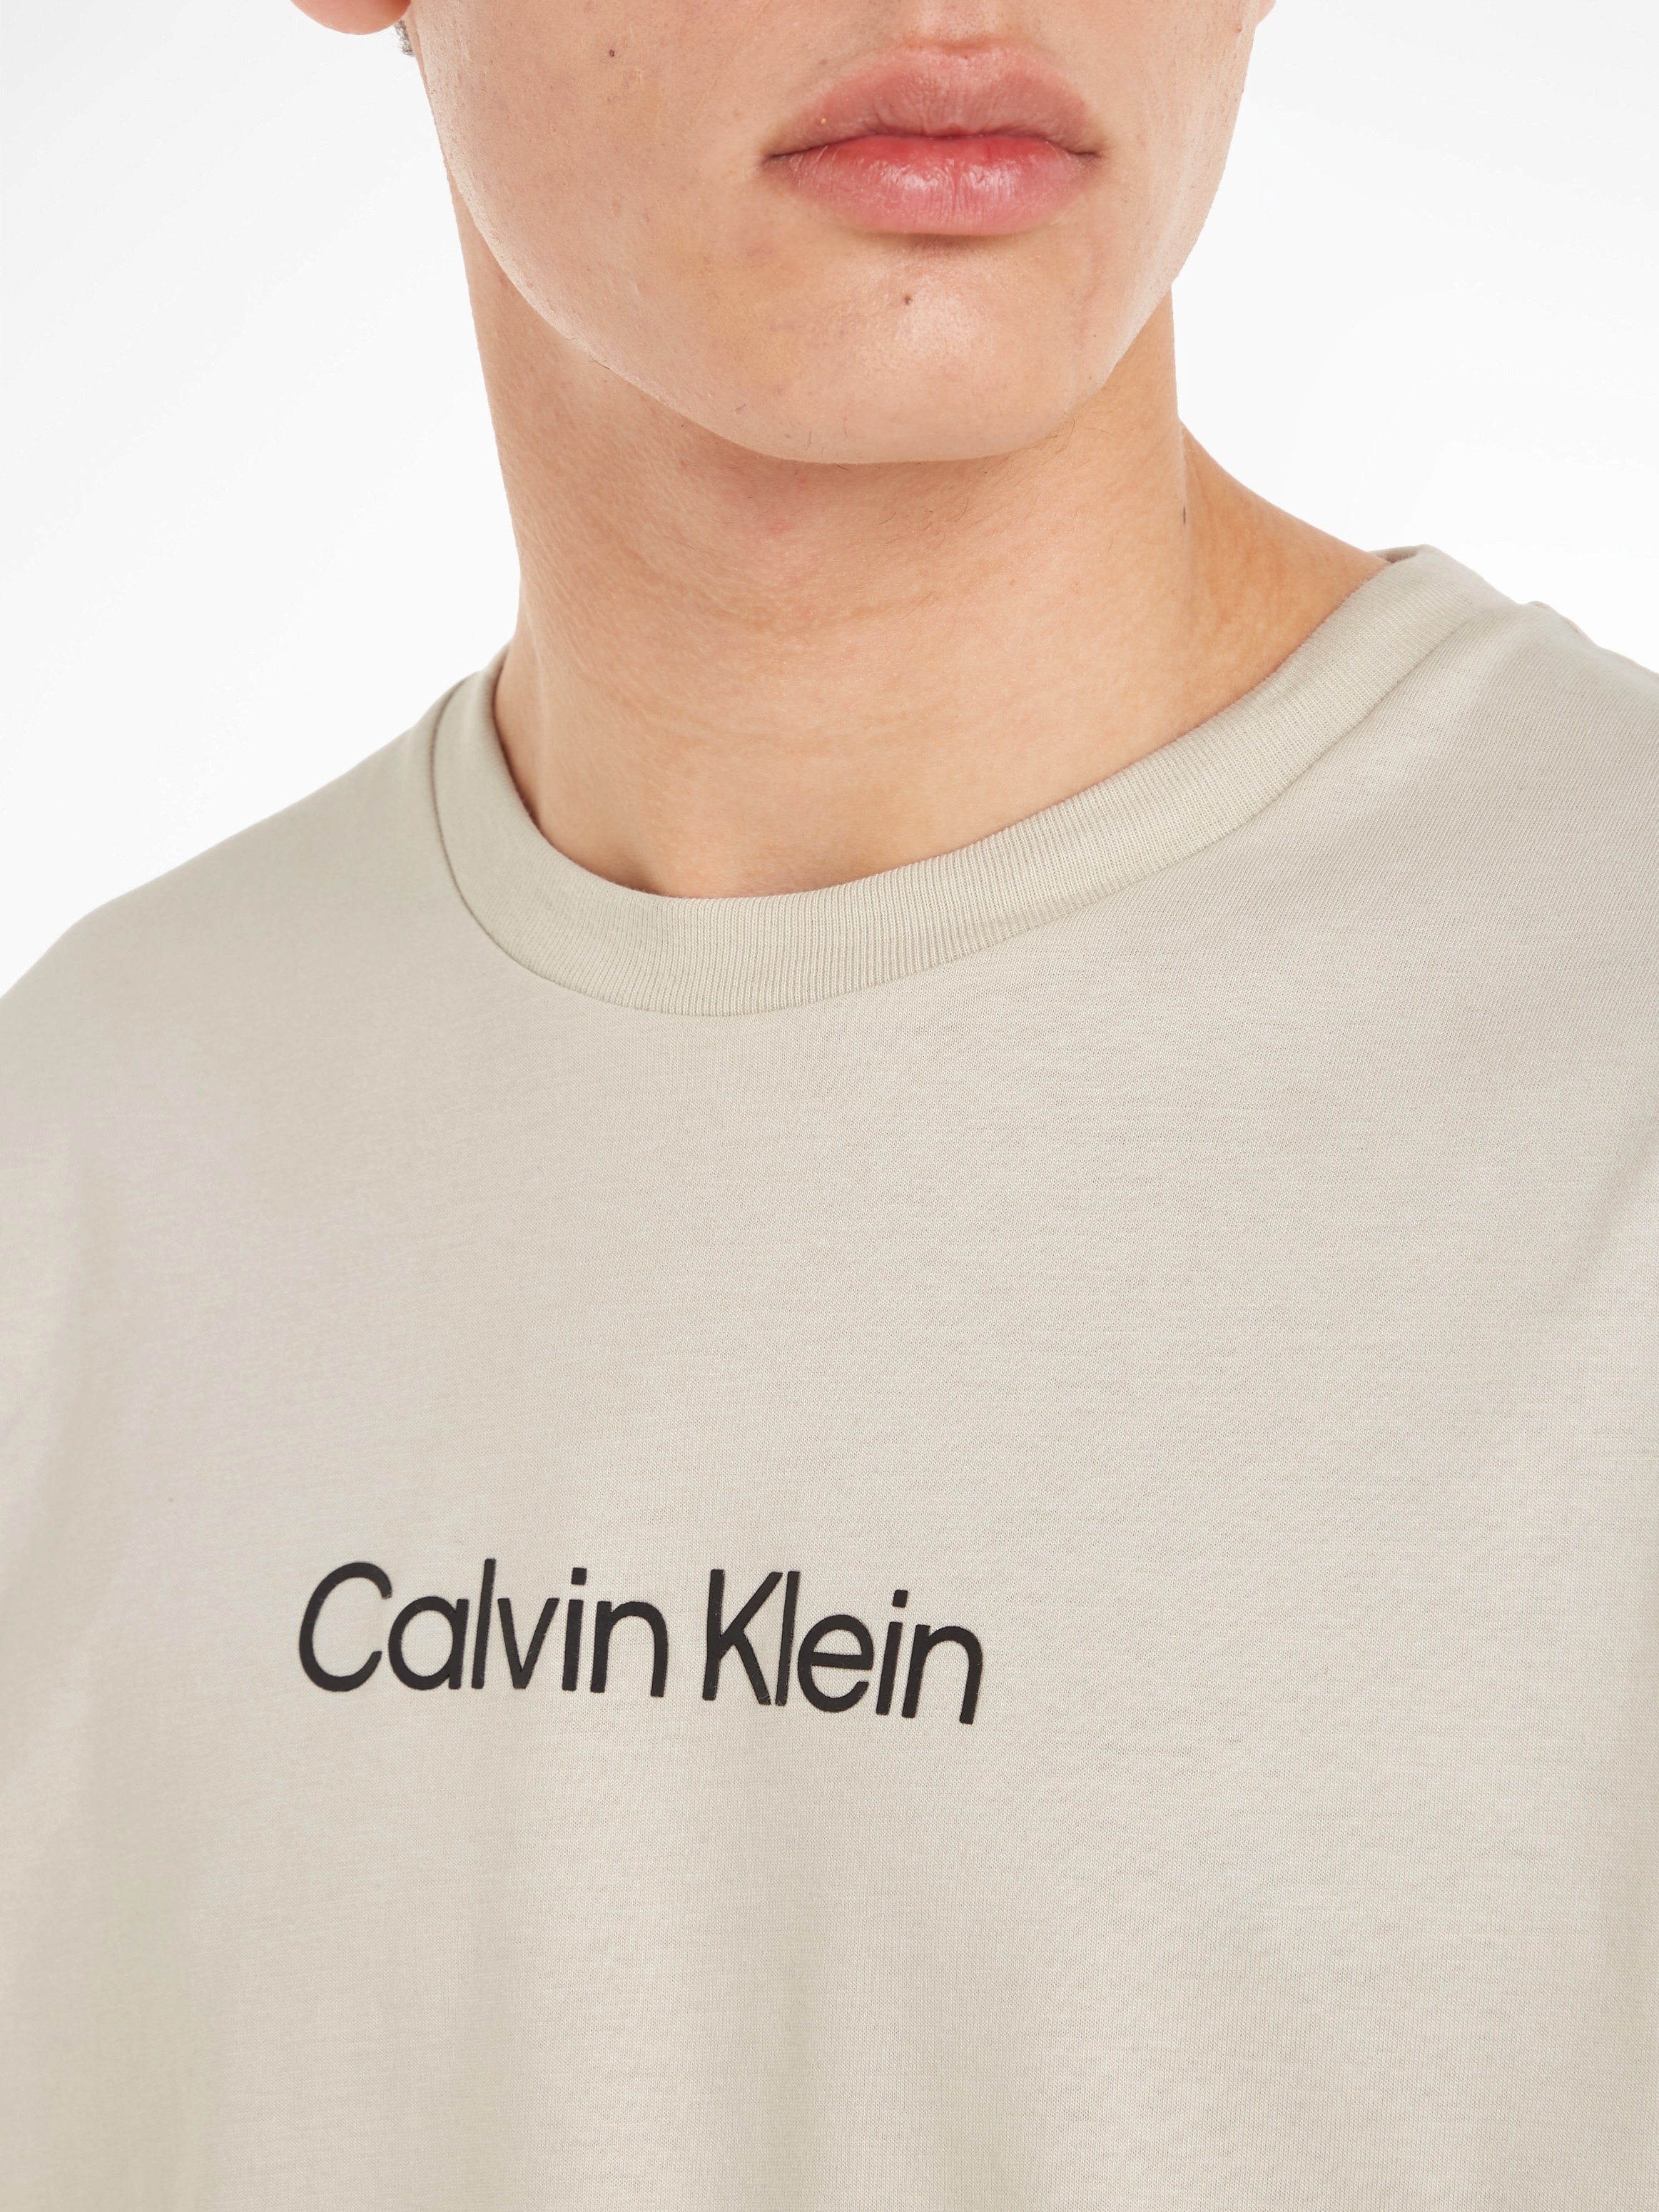 COMFORT Klein T-SHIRT«, Calvin T-Shirt bei mit Markenlabel aufgedrucktem ♕ LOGO »HERO